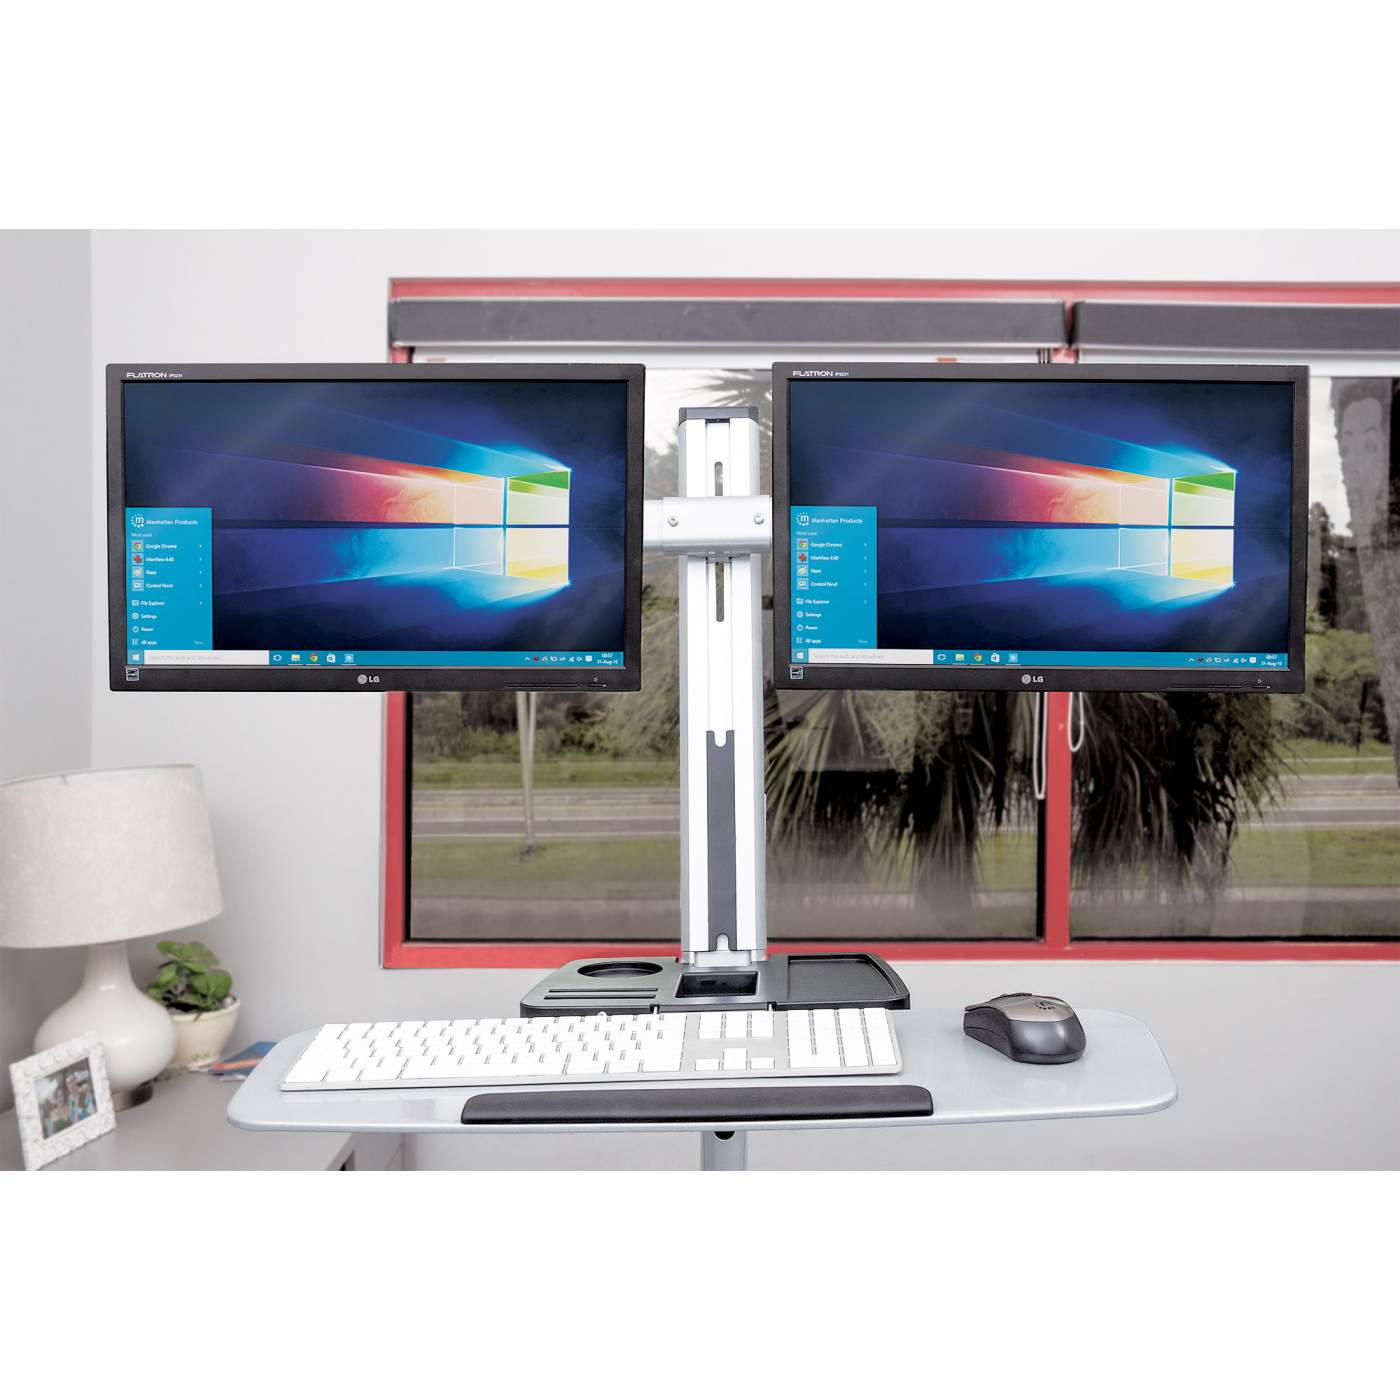 Soporte para monitor, de escritorio, movimiento articulado, 3 pantallas  planas de 13 a 27 máximo 7 kg cada una